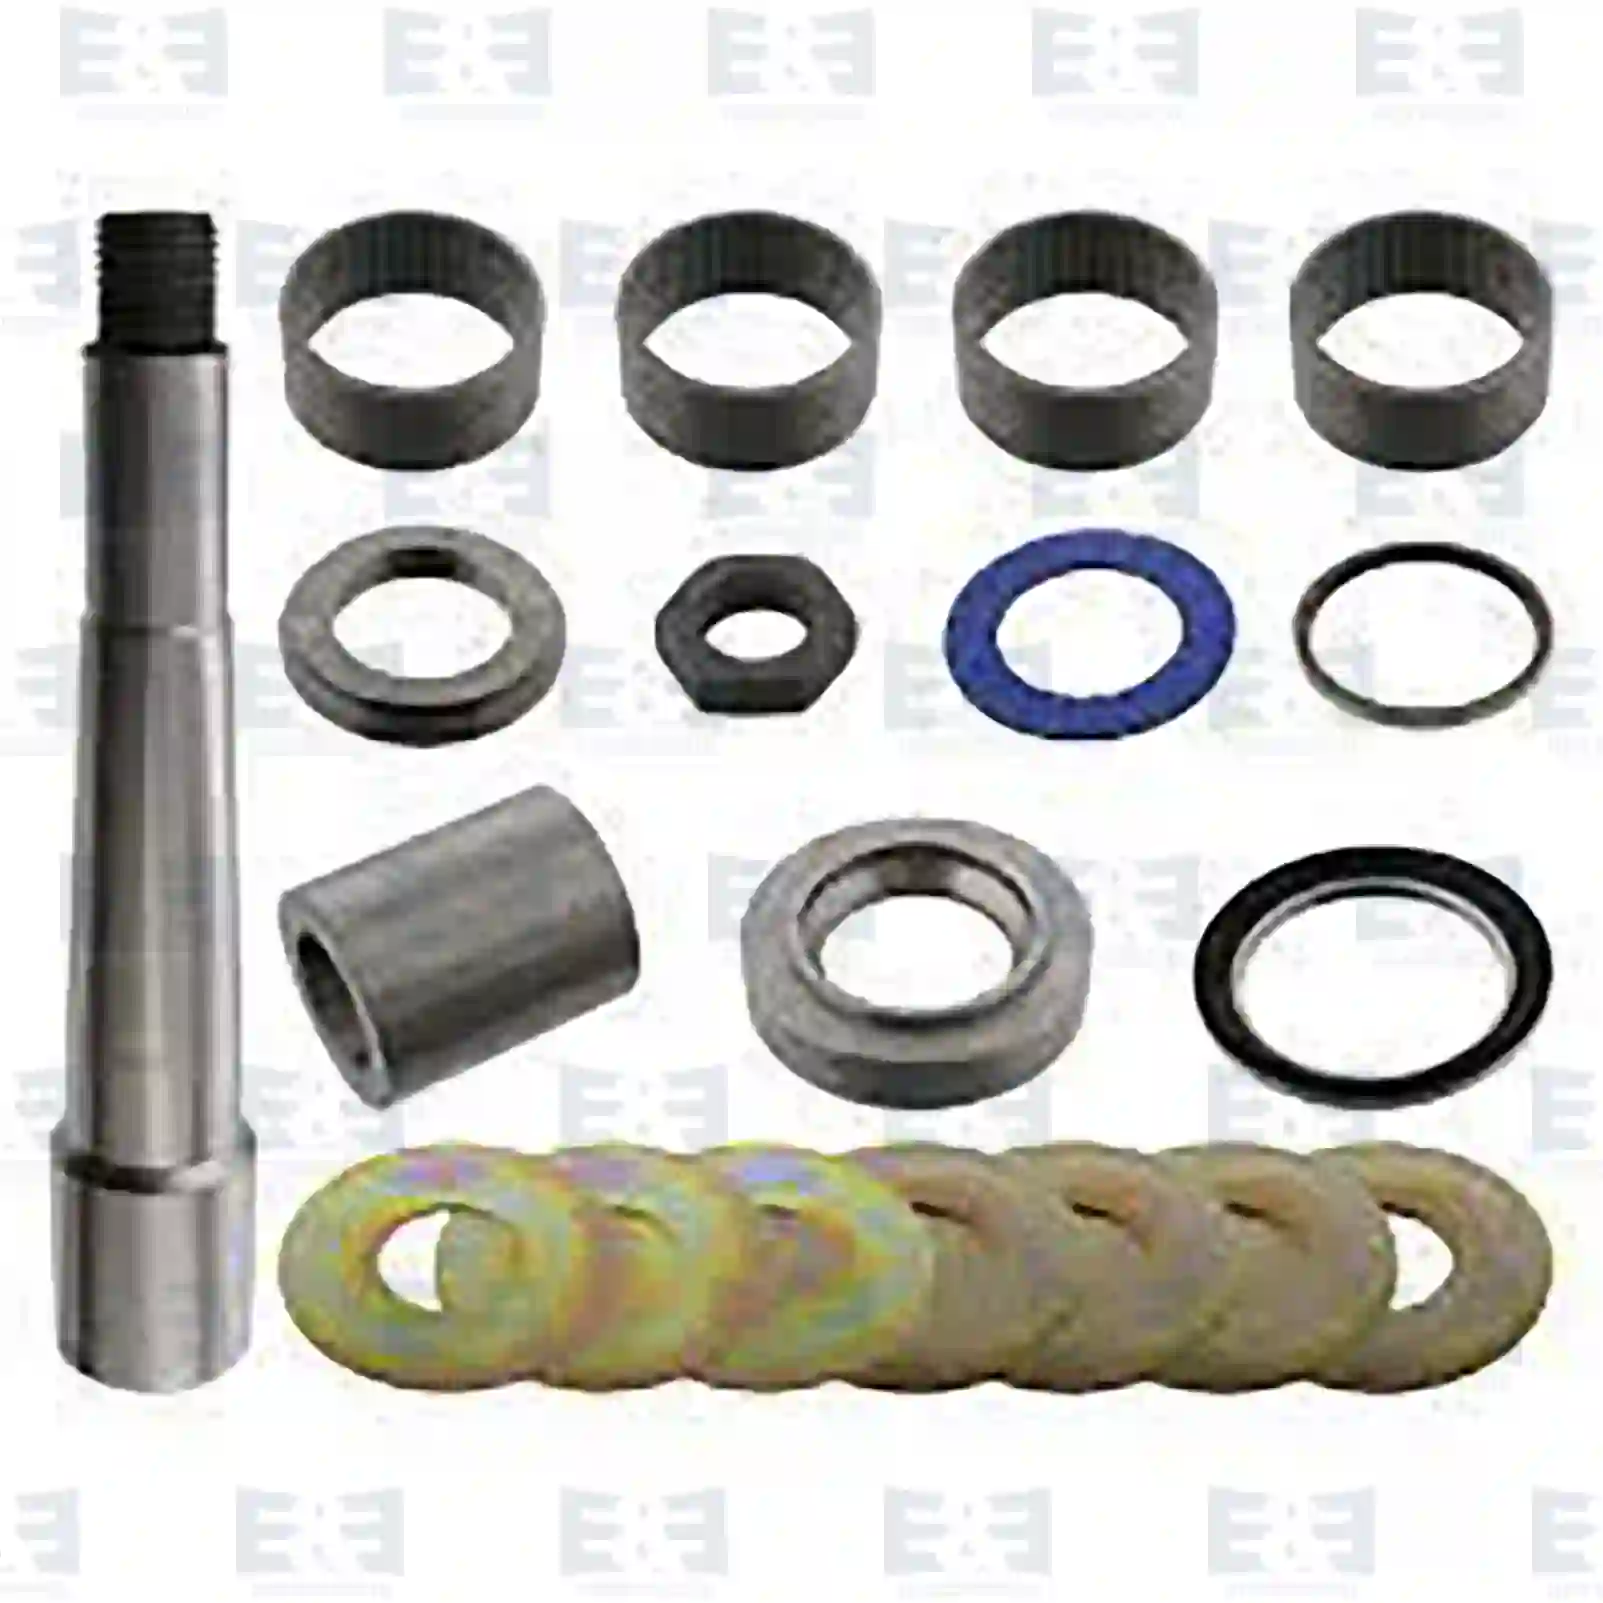  King pin kit, single kit || E&E Truck Spare Parts | Truck Spare Parts, Auotomotive Spare Parts